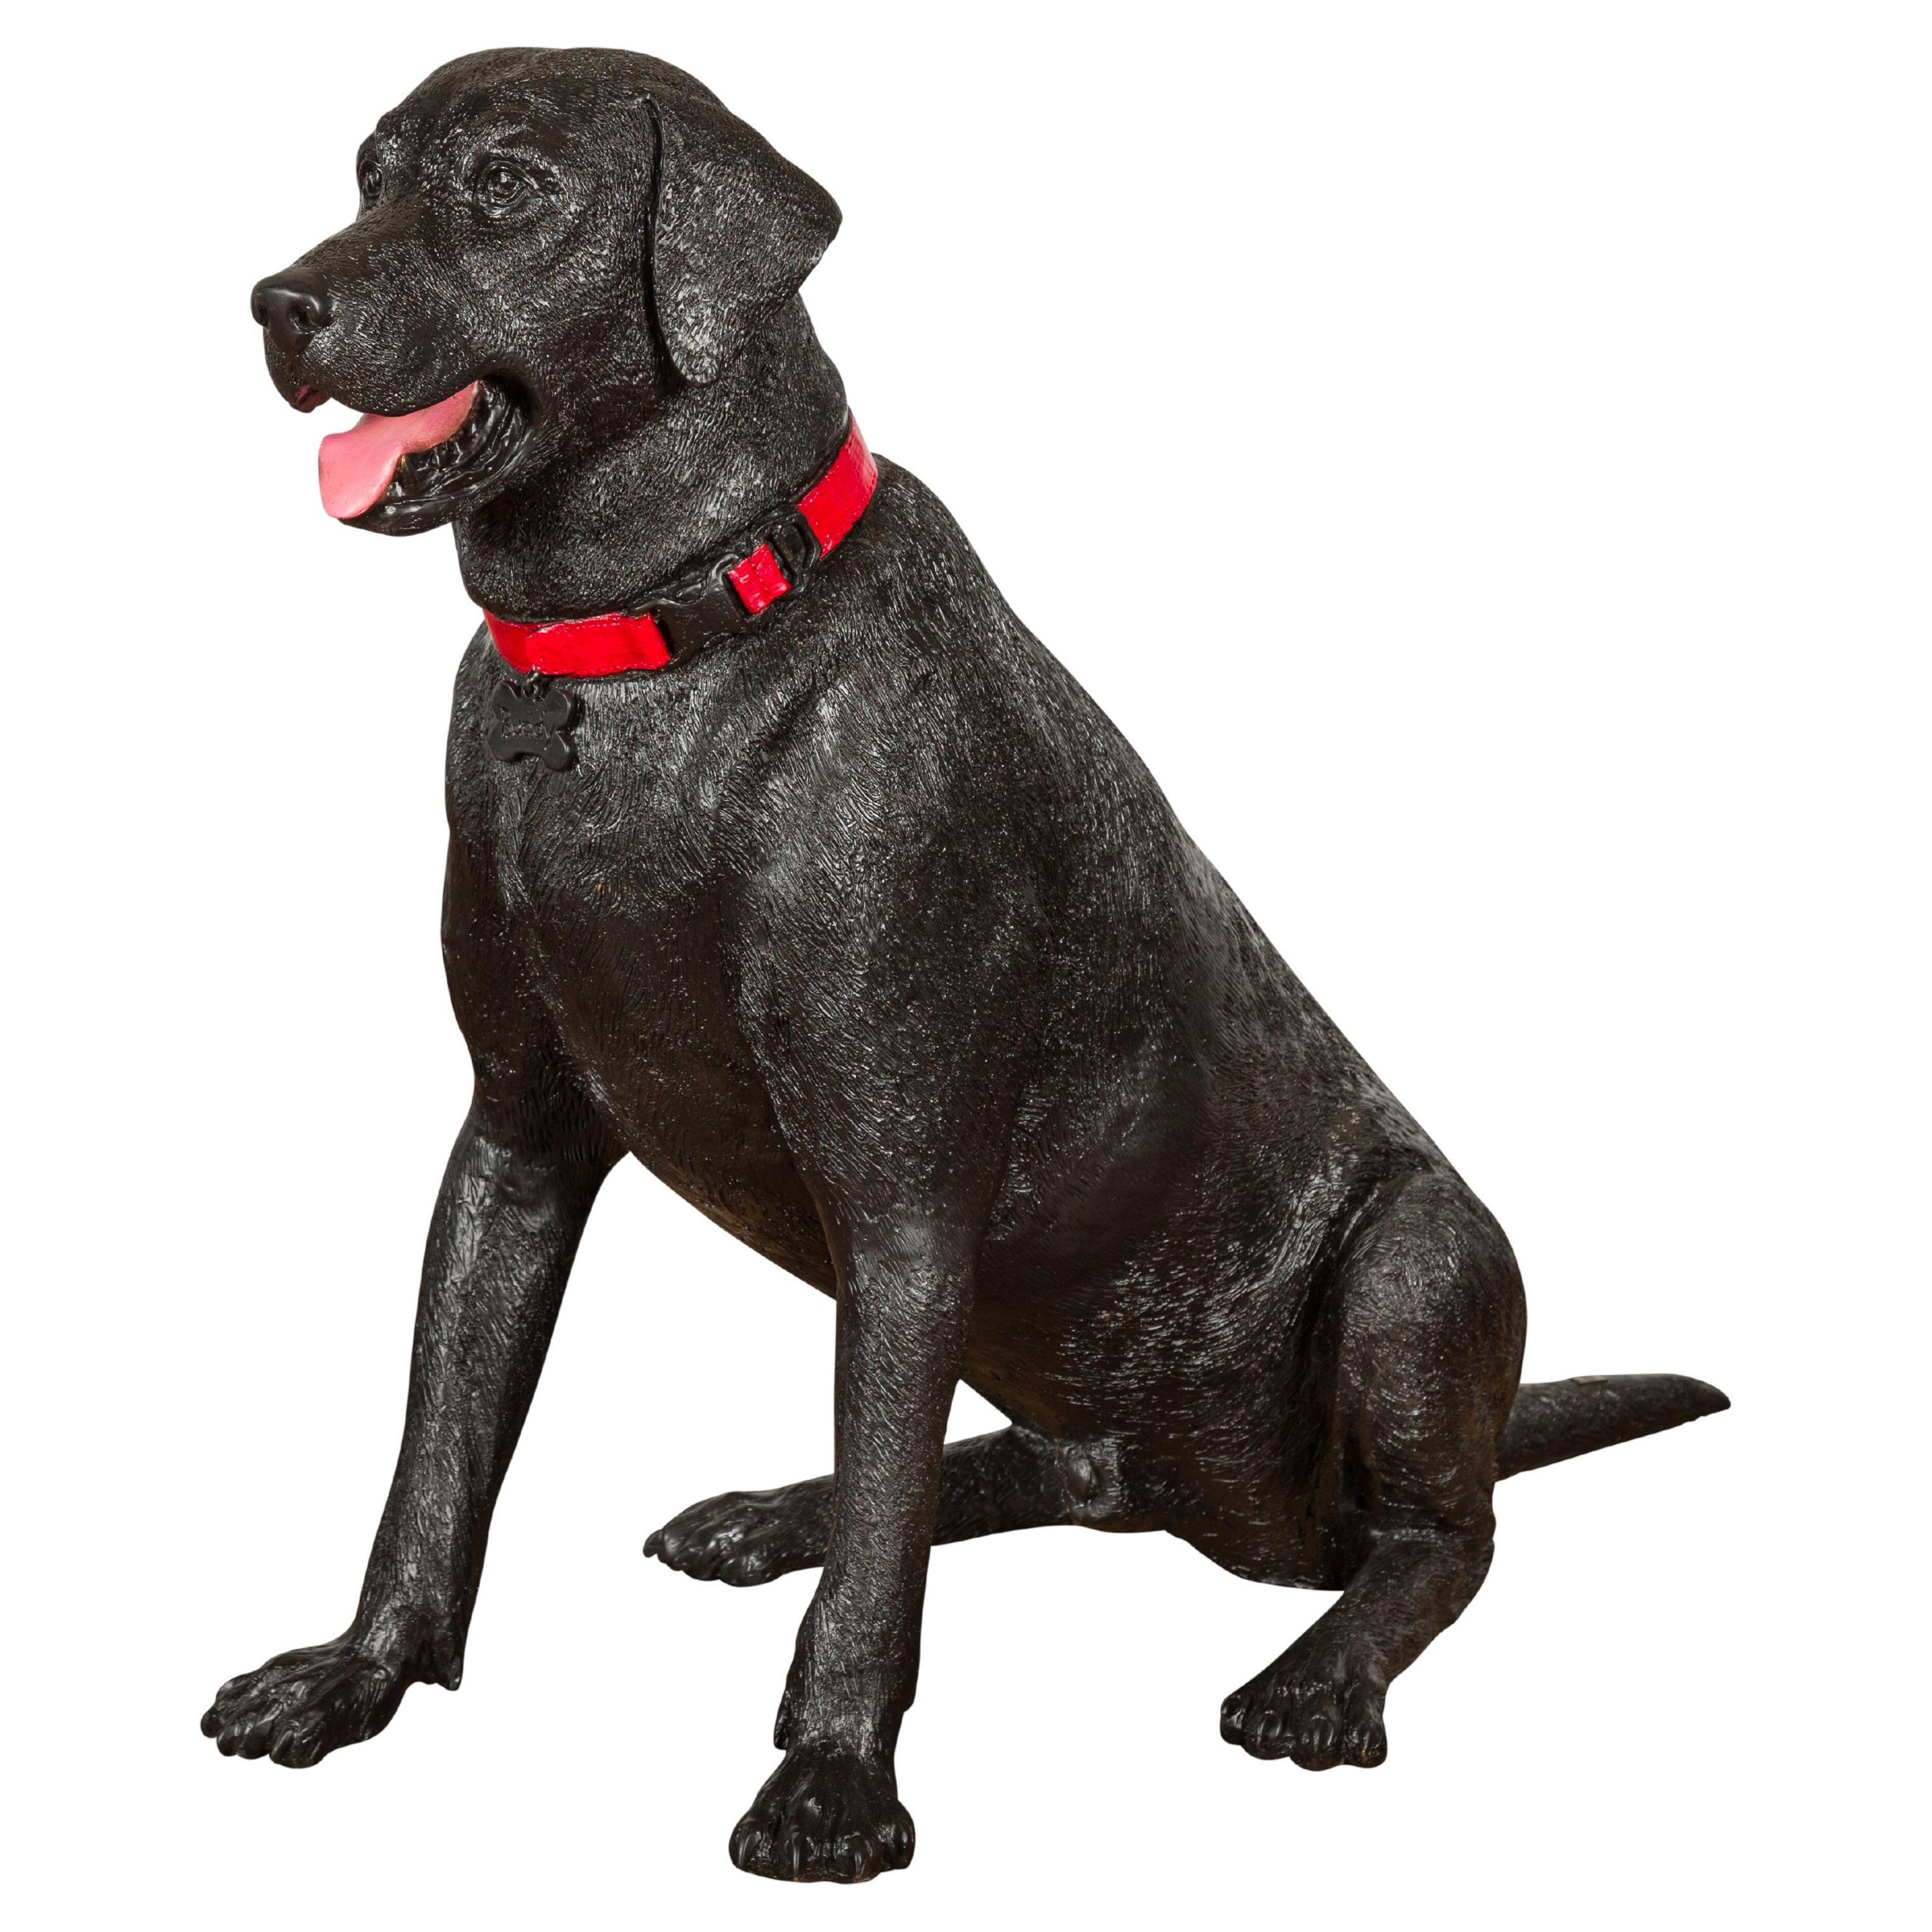 Bronze-Hundestatue eines sitzenden Labradors mit rotem Kragen aus Bronze, limitierte Auflage